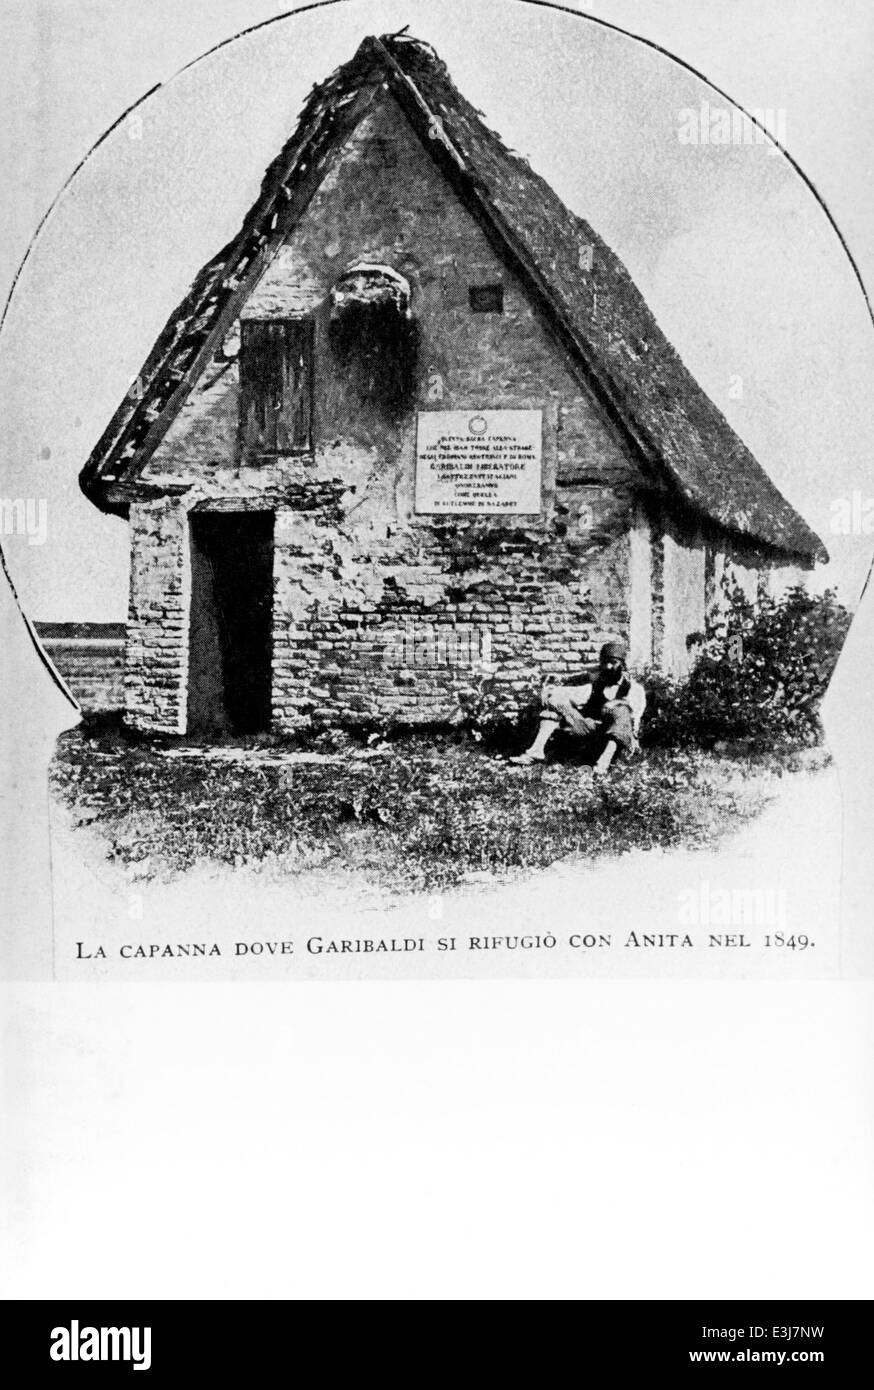 Giuseppe Garibaldi il capanno dove si rifugiò con Anita,1849 Foto Stock